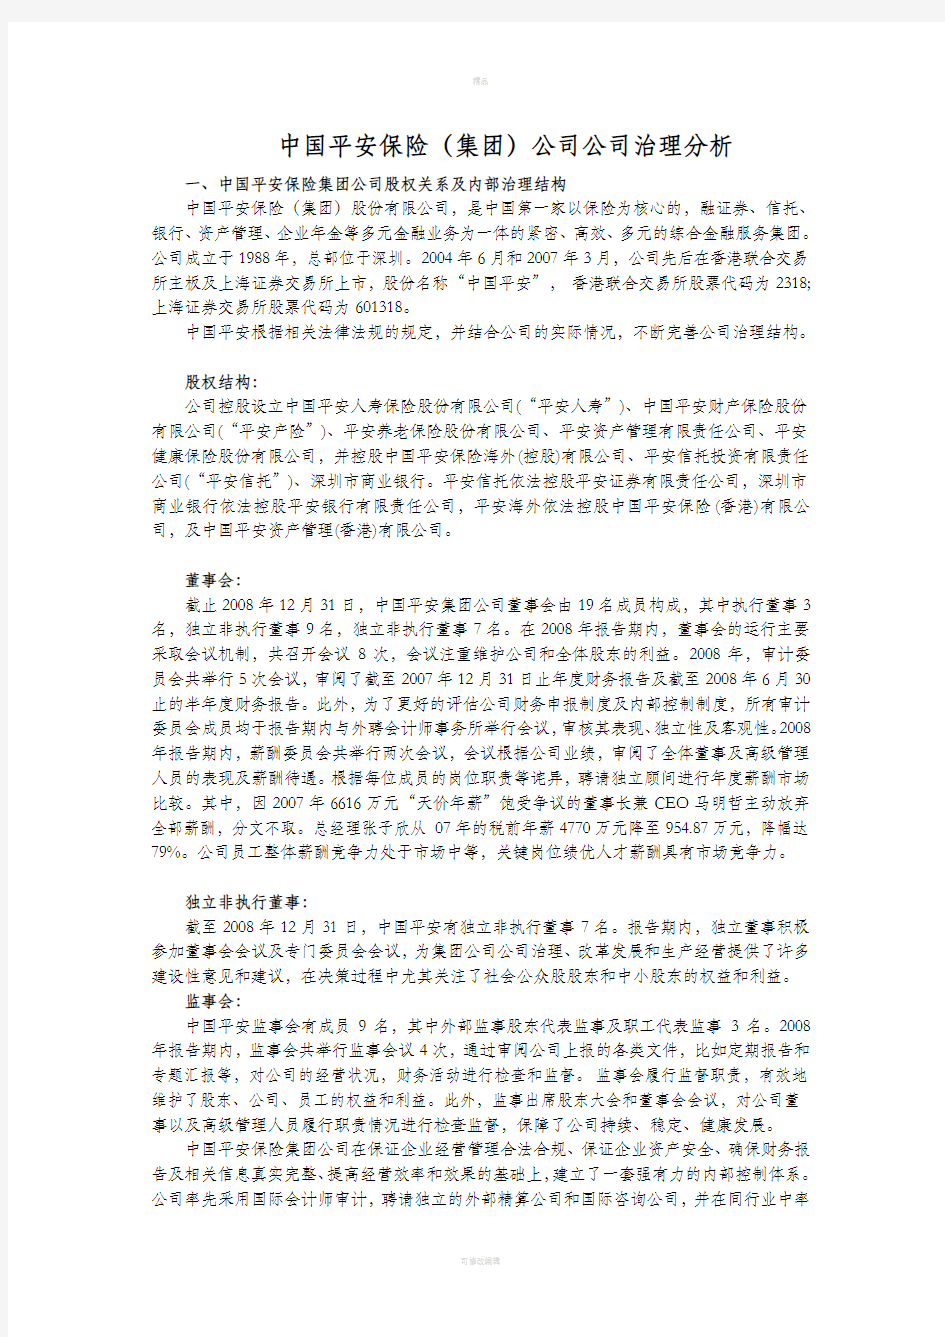 中国平安保险公司公司治理分析报告